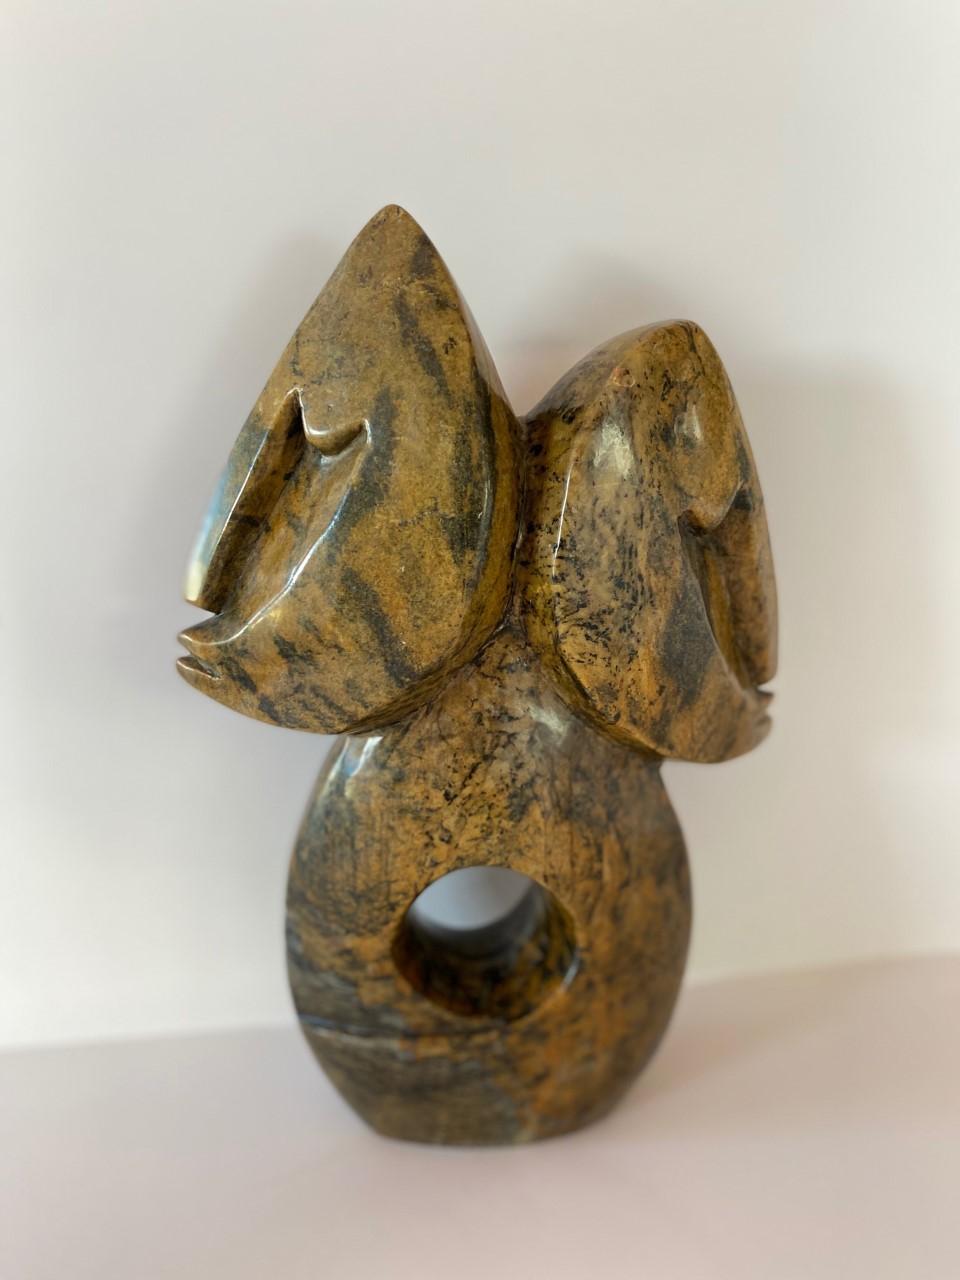 Incroyable sculpture abstraite de Tafadzwa Tandi réalisée à partir d'un solide morceau de pierre serpentine. Artiste zimbabwéen de troisième génération, Tafadzwa a appris le langage de la pierre auprès de son père, poussant son art et son talent à